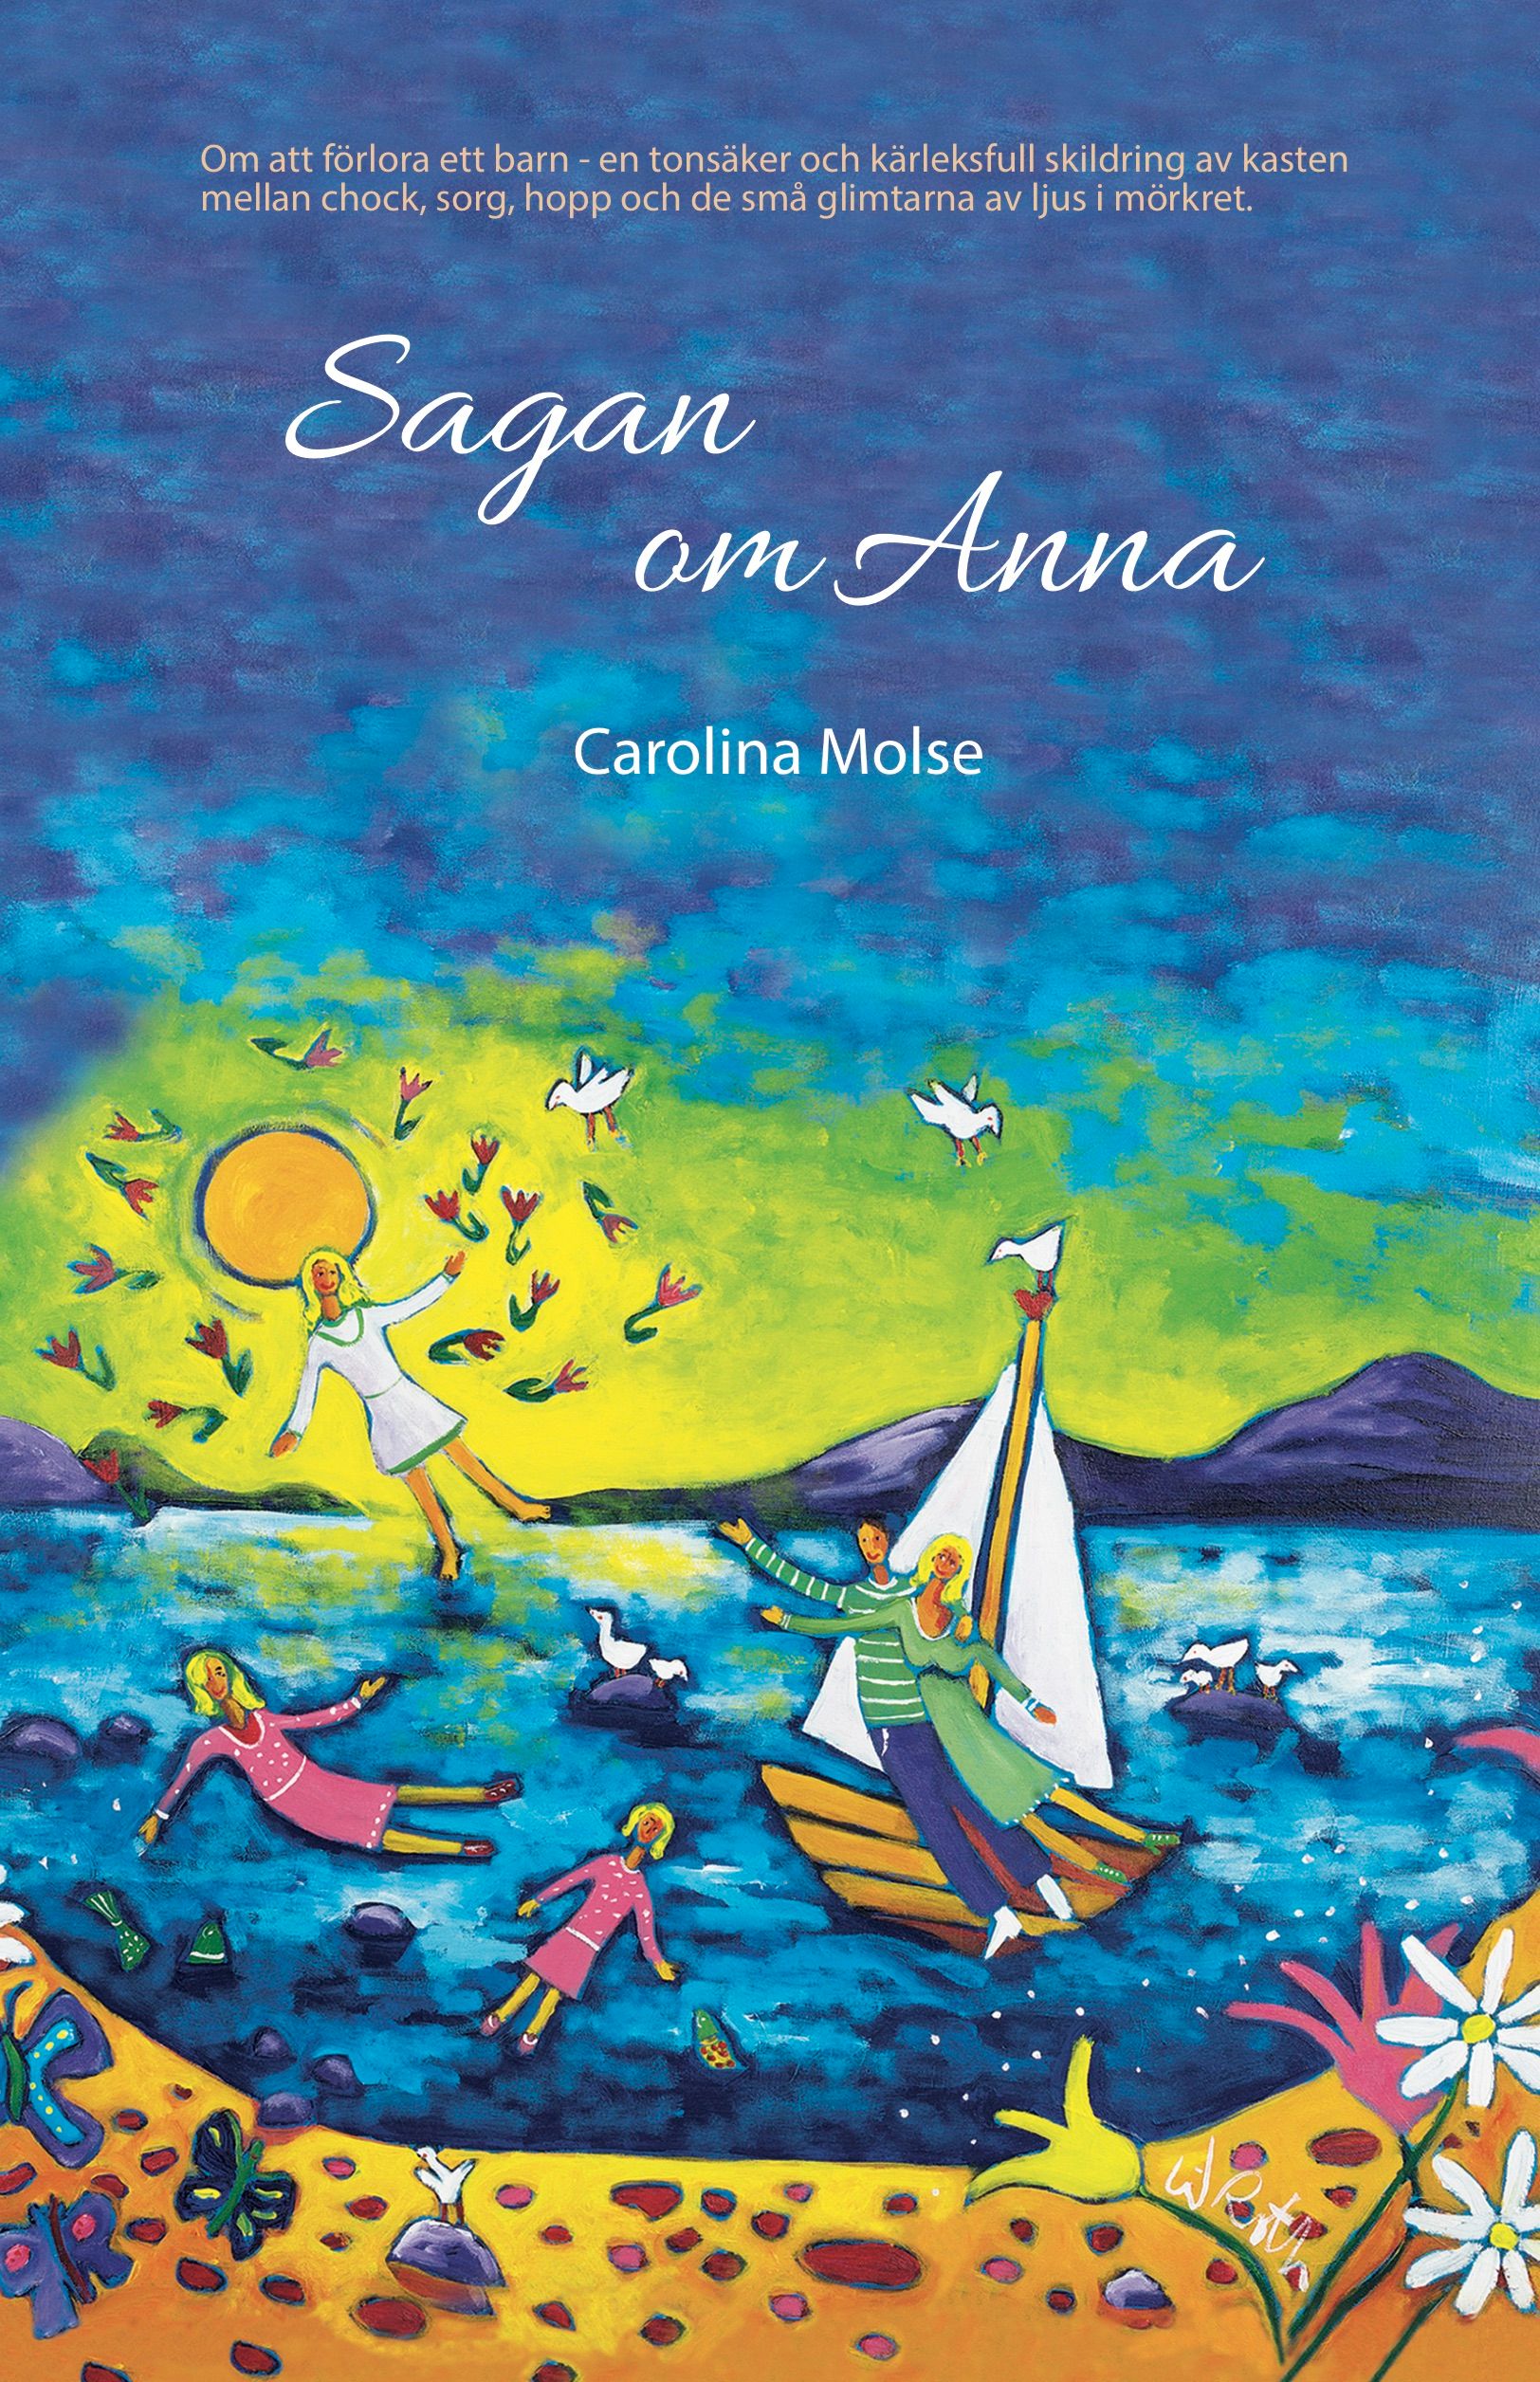 Sagan om Anna, e-bok av Carolina Molse